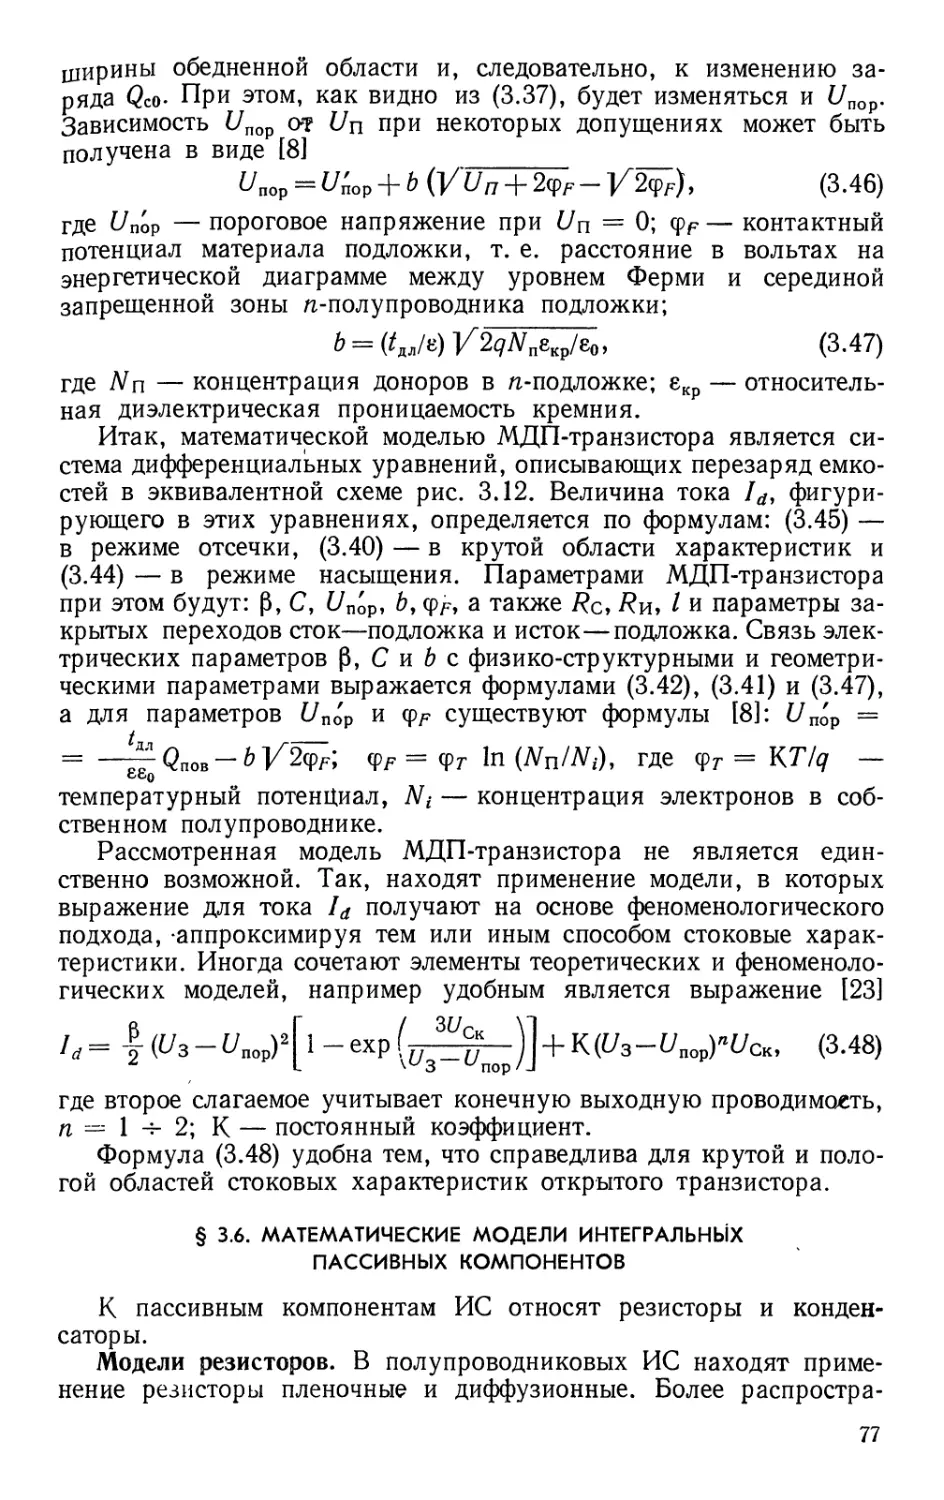 §3.6. Математические модели интегральных пассивных компонентов